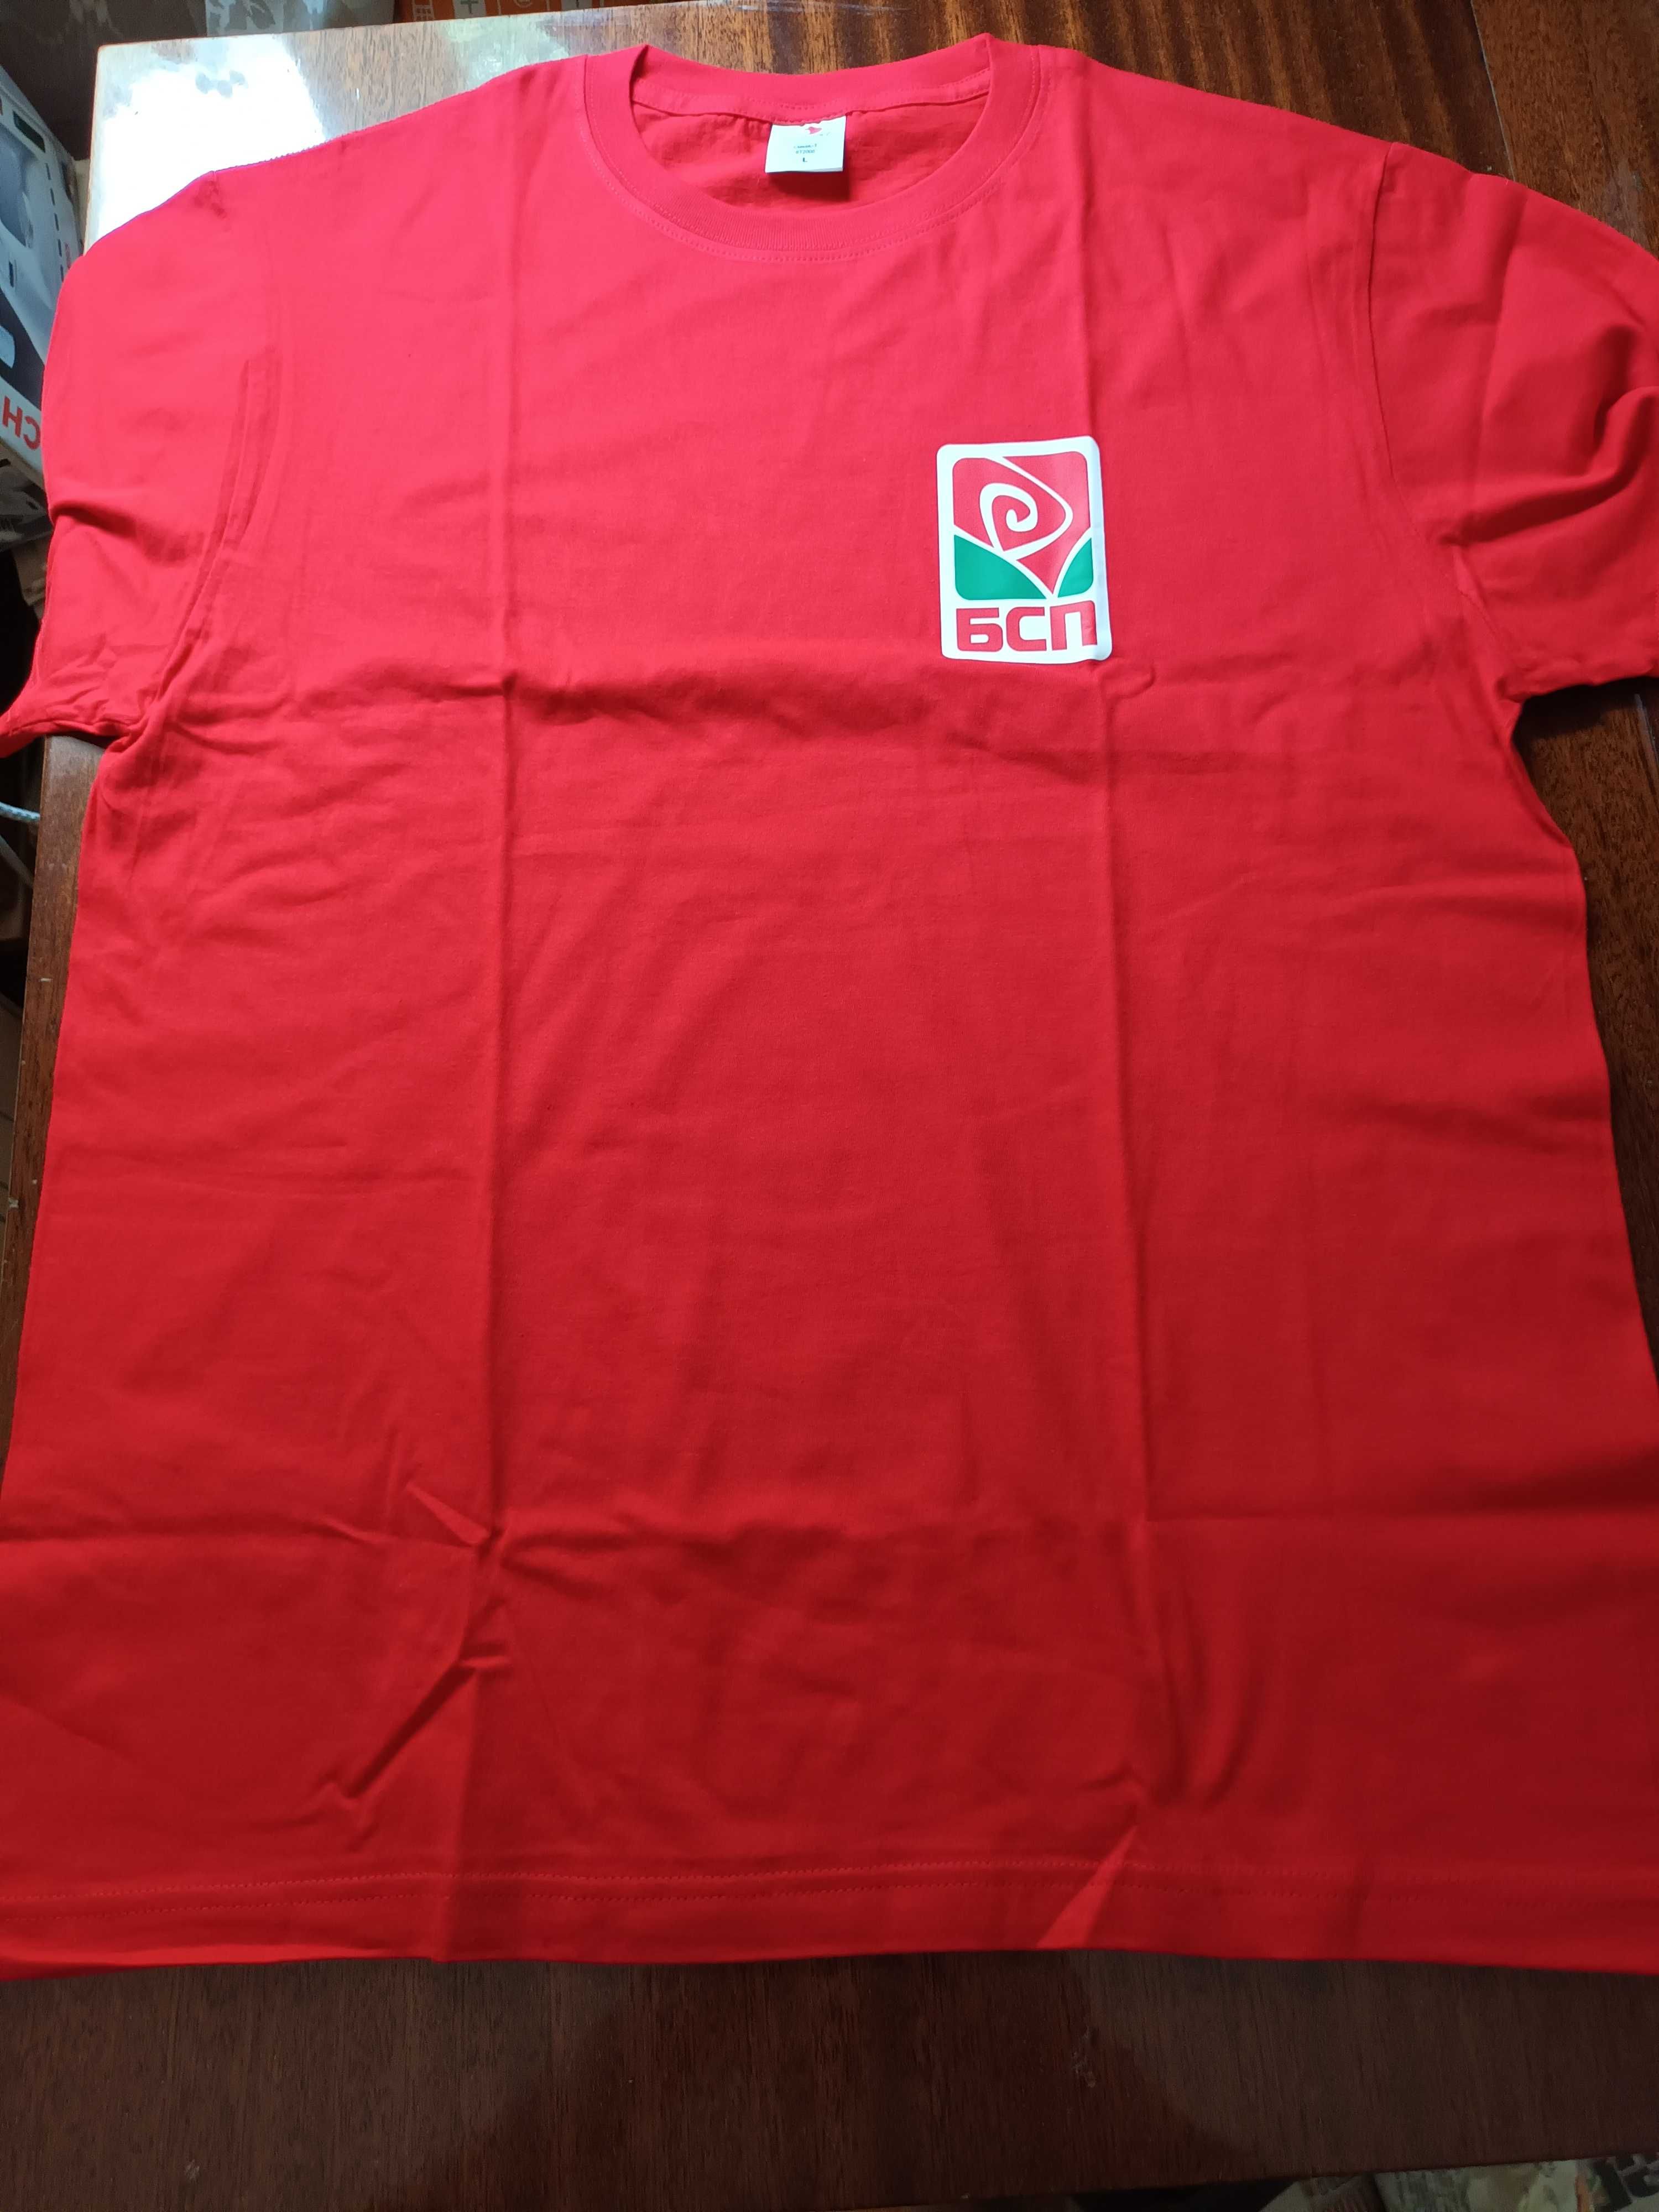 Артикули партия Бсп-Червена връзки тениски Шапка Знаменце